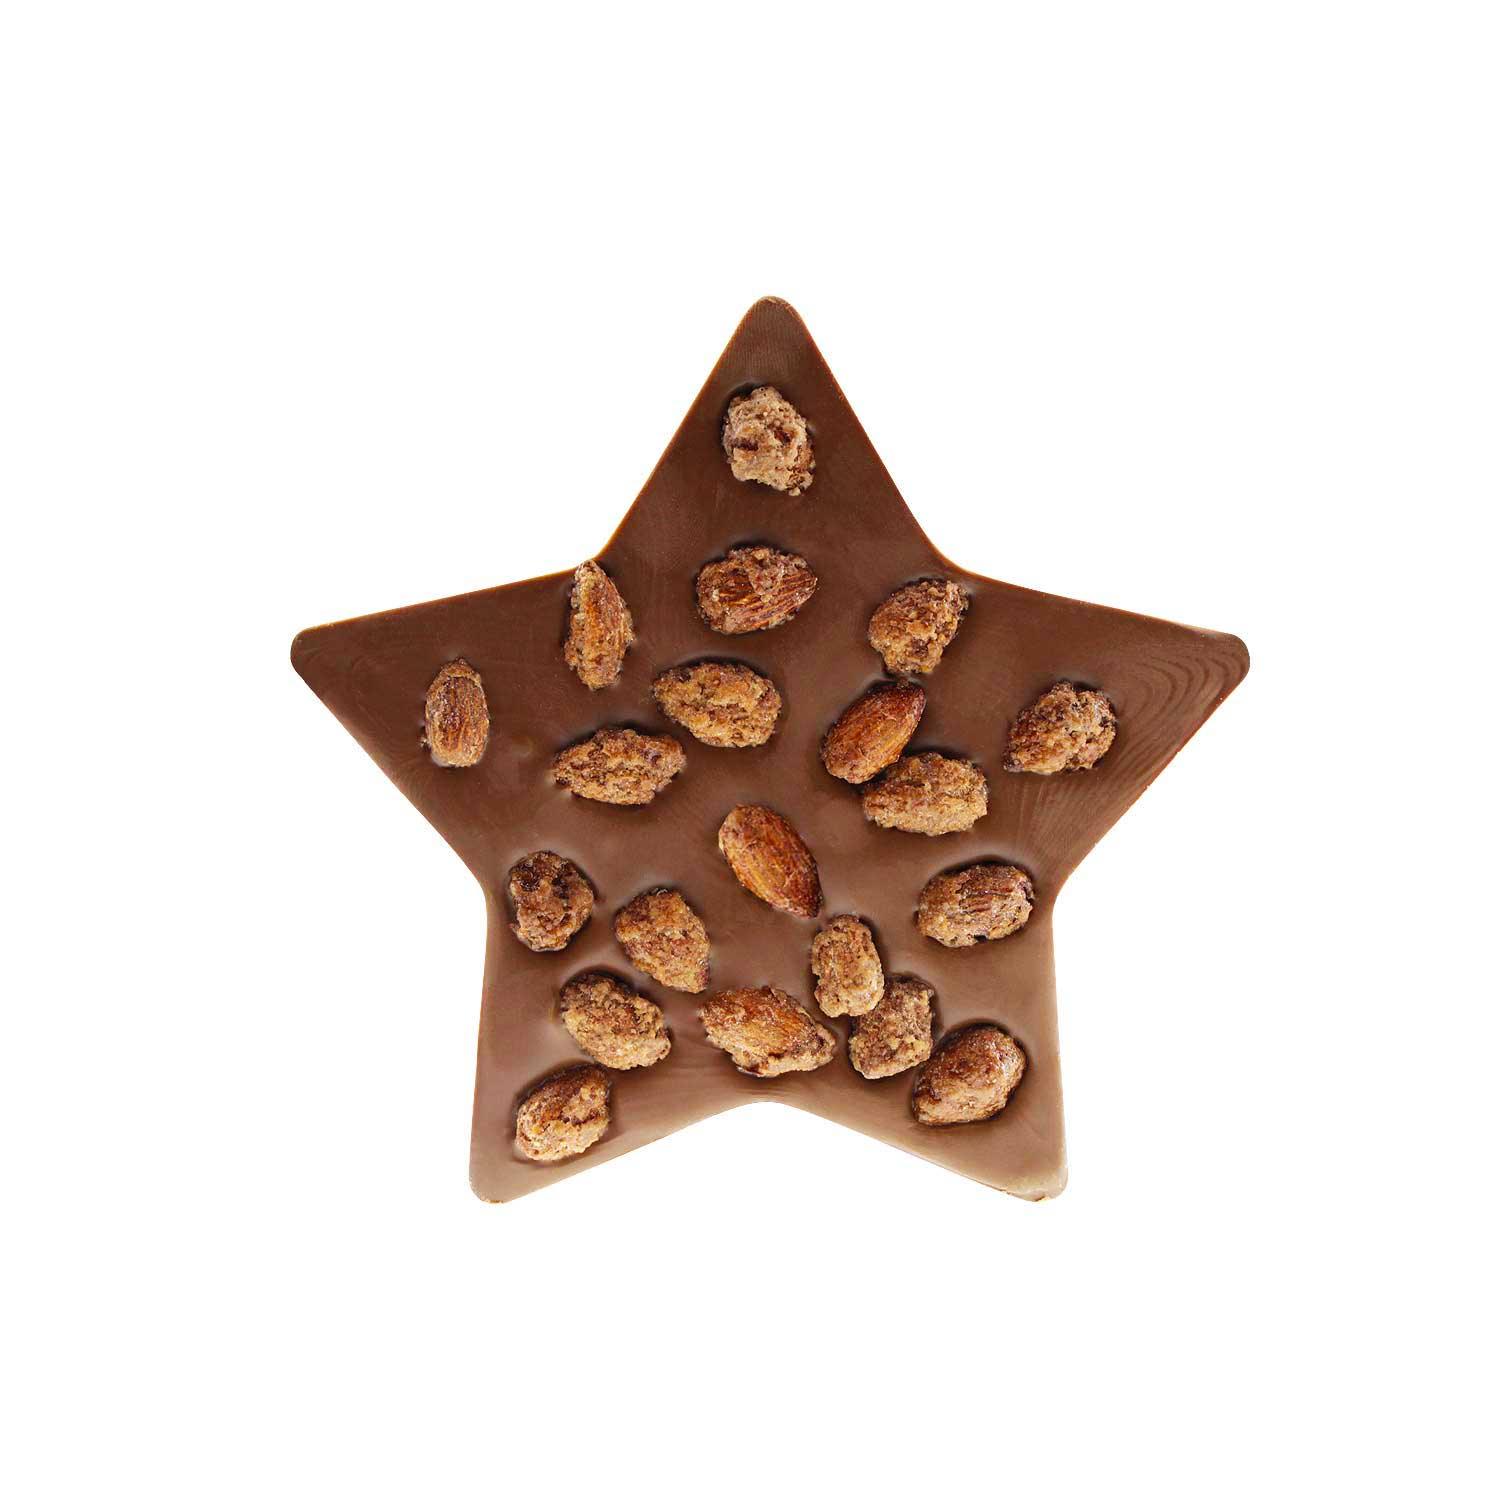 Schokolad mit gebrannten Mandeln "Stern" - bavariashop - mei LebensGfui